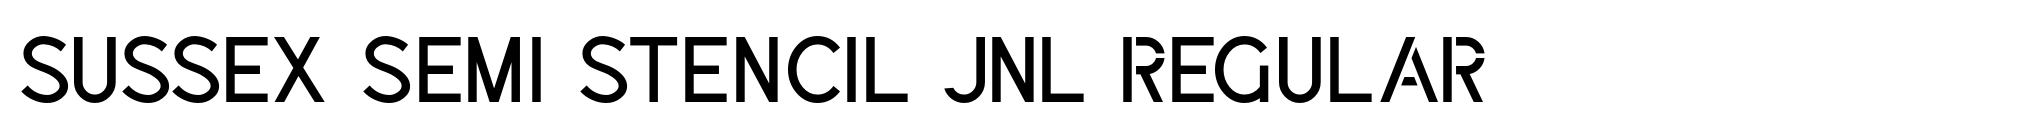 Sussex Semi Stencil JNL Regular image